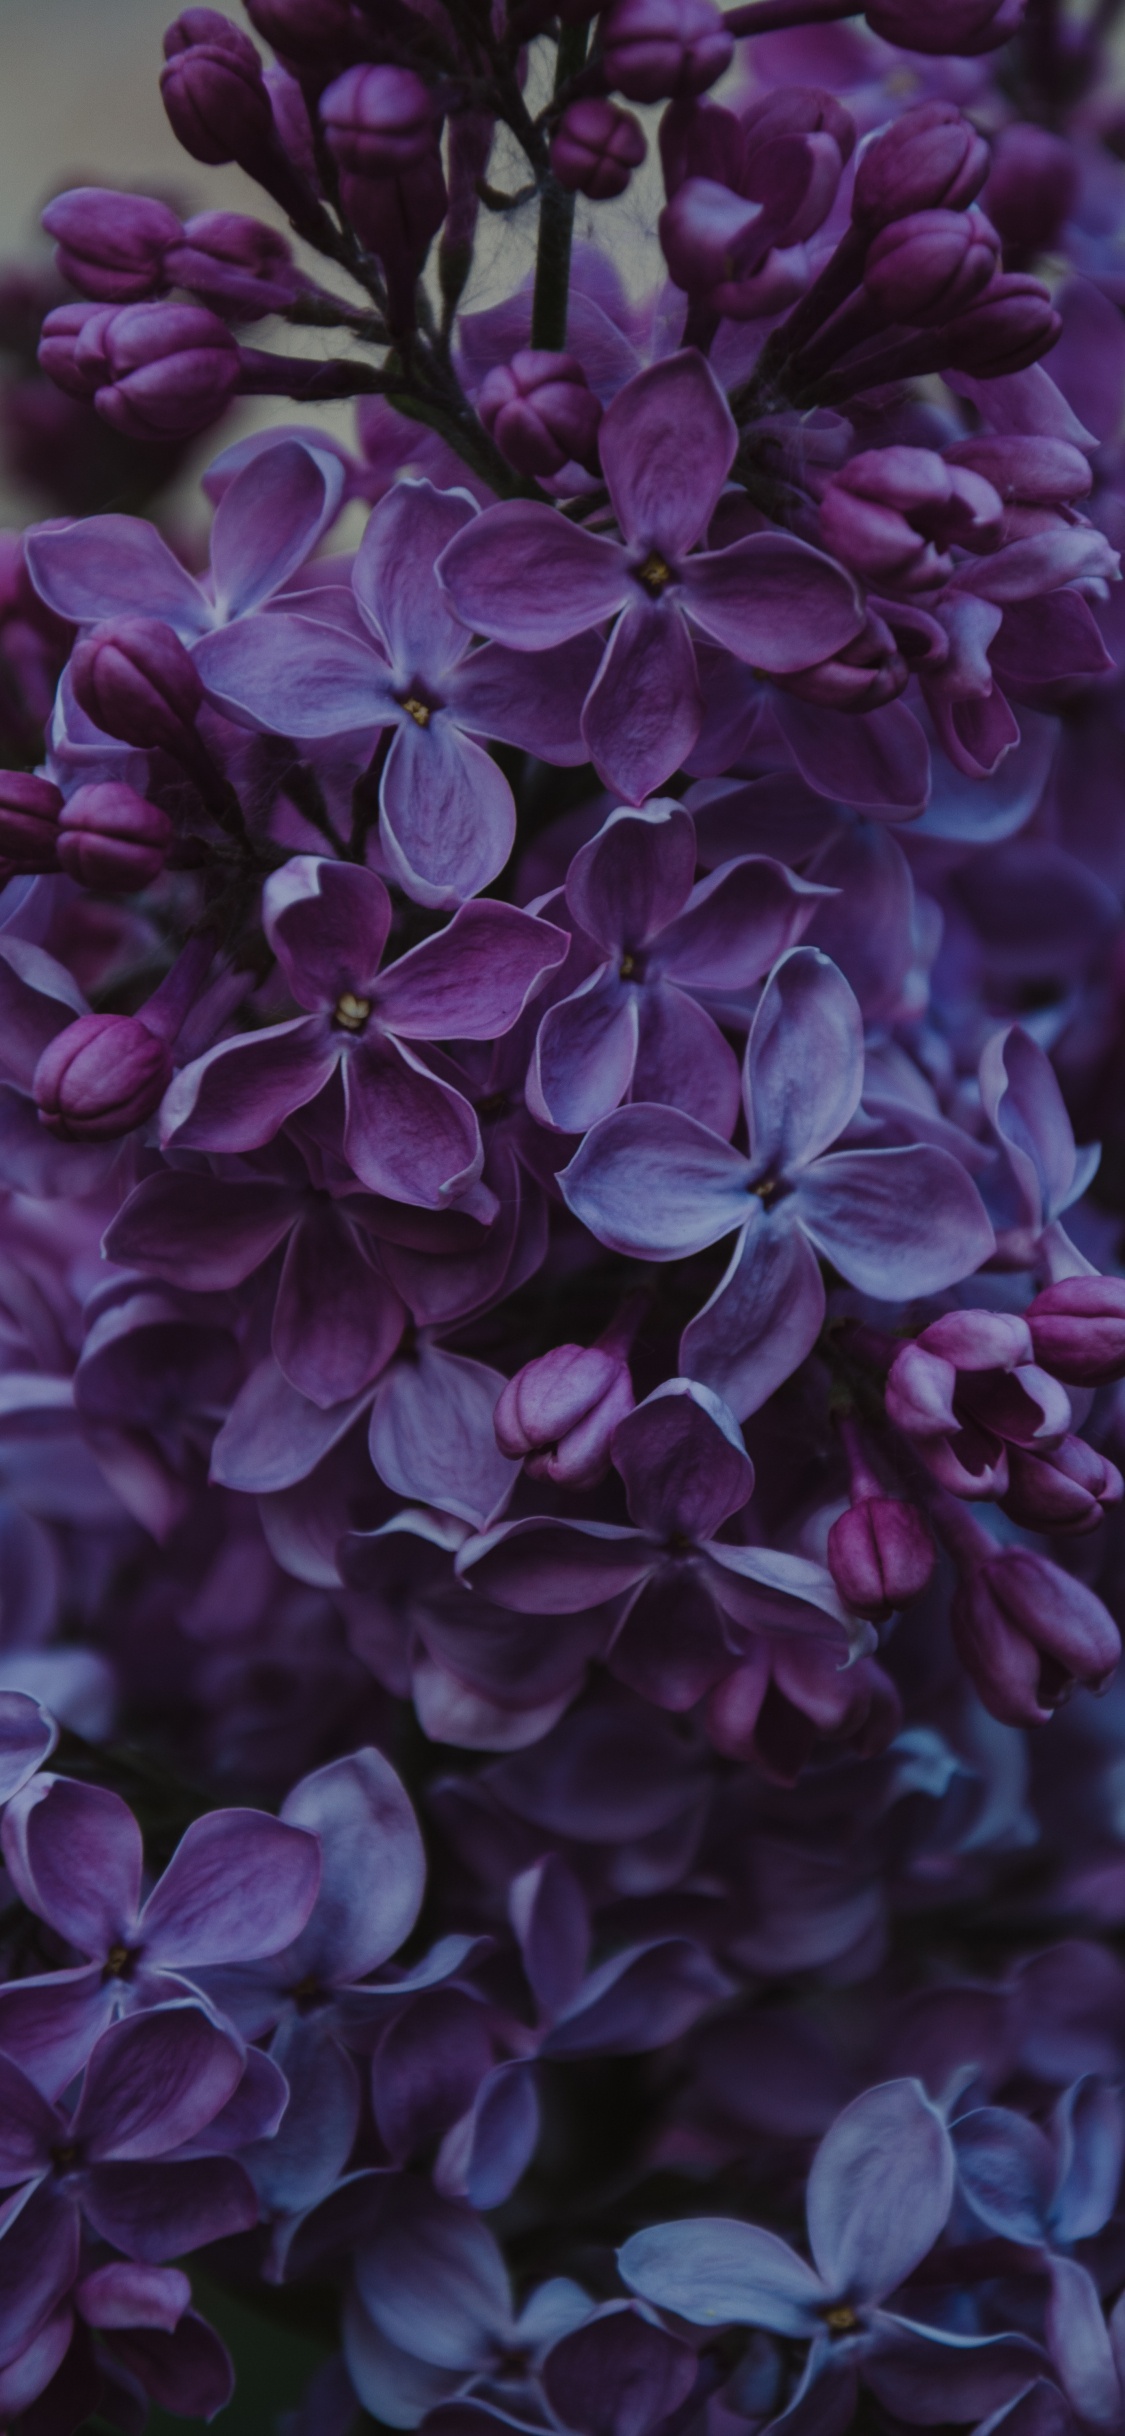 Fleurs Violettes Dans L'objectif à Basculement. Wallpaper in 1125x2436 Resolution